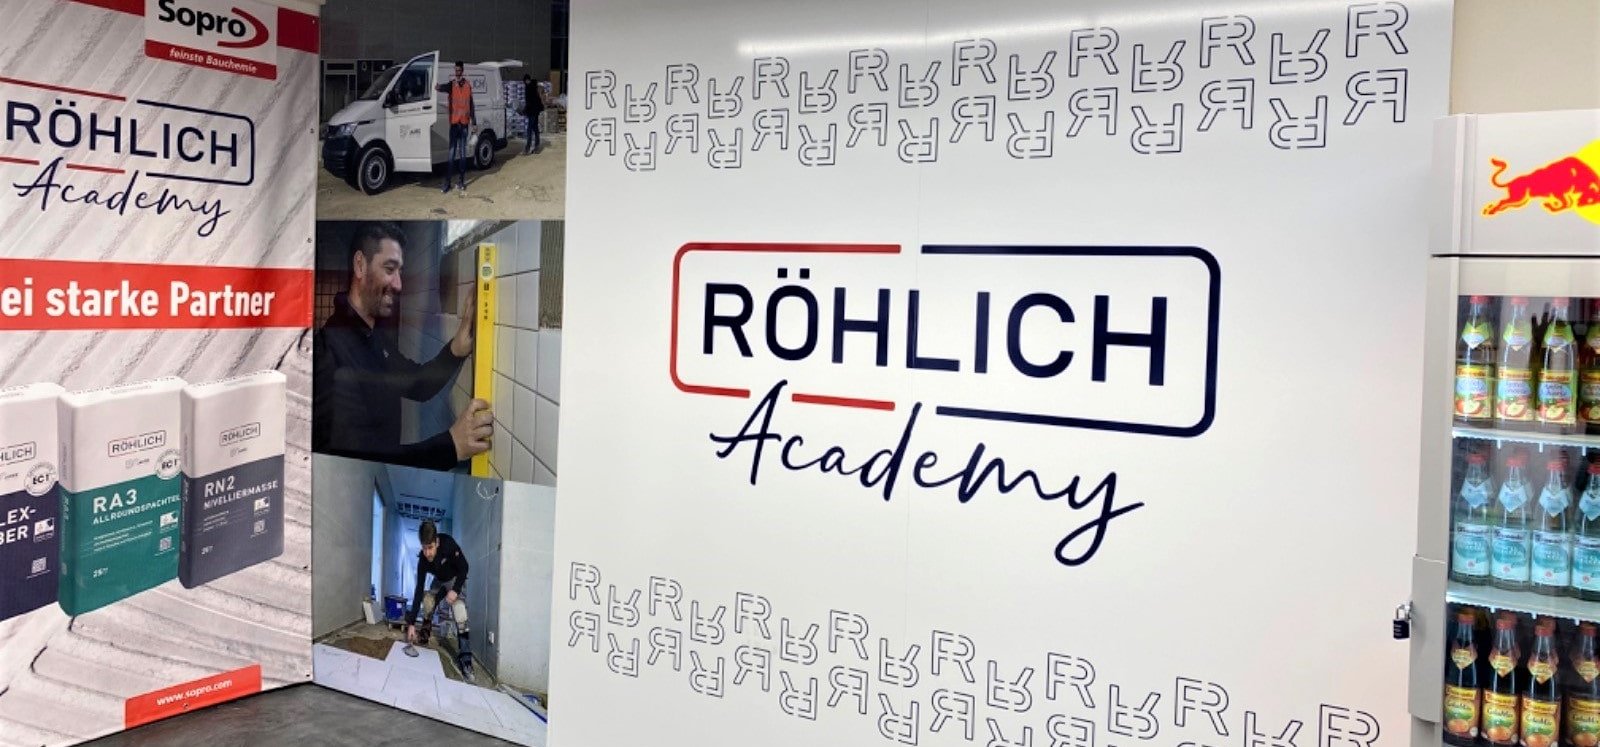 Wall mit Röhlich Academy Logo